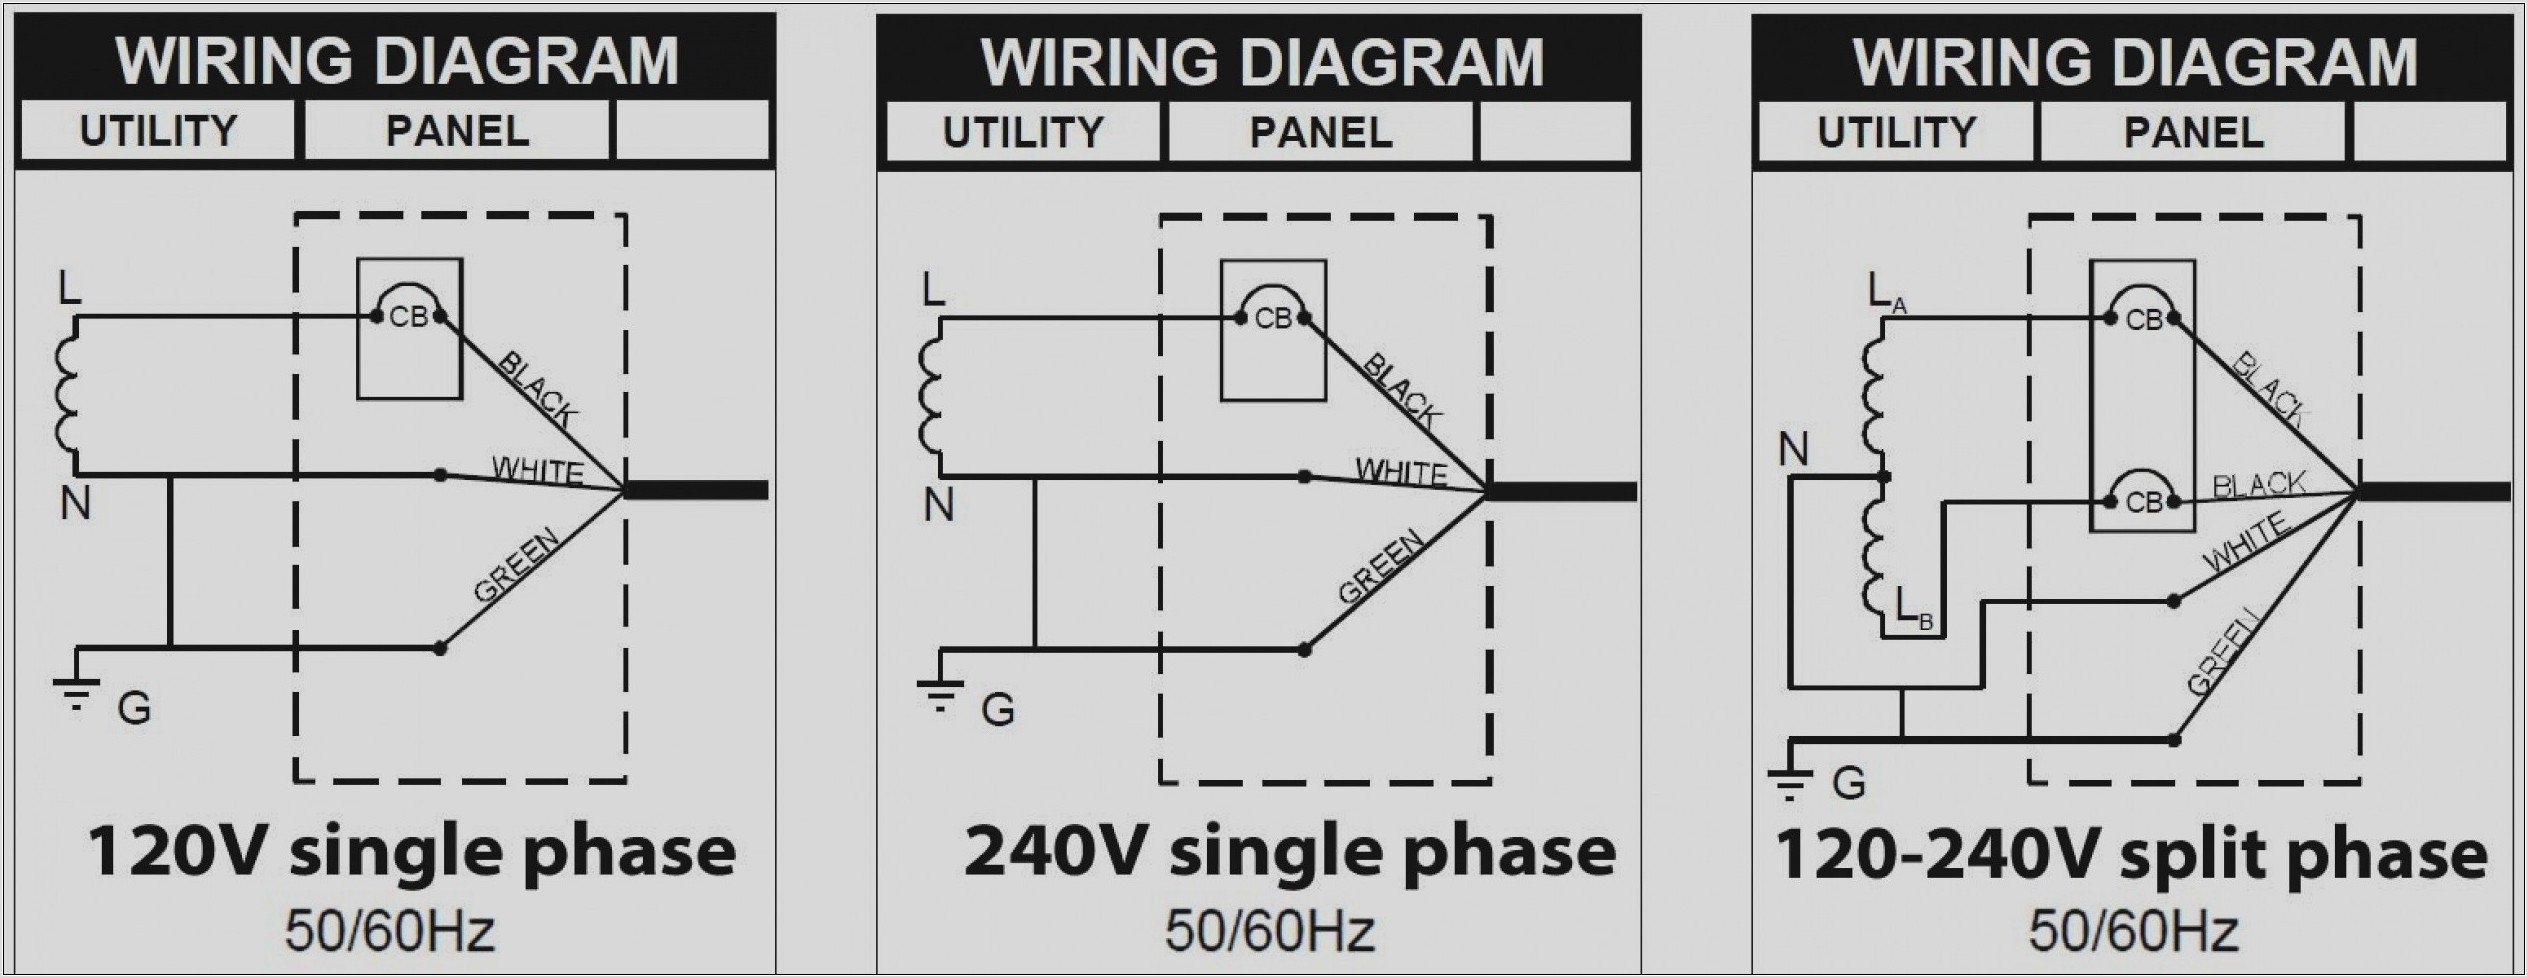 240v Single Phase Wiring Diagram